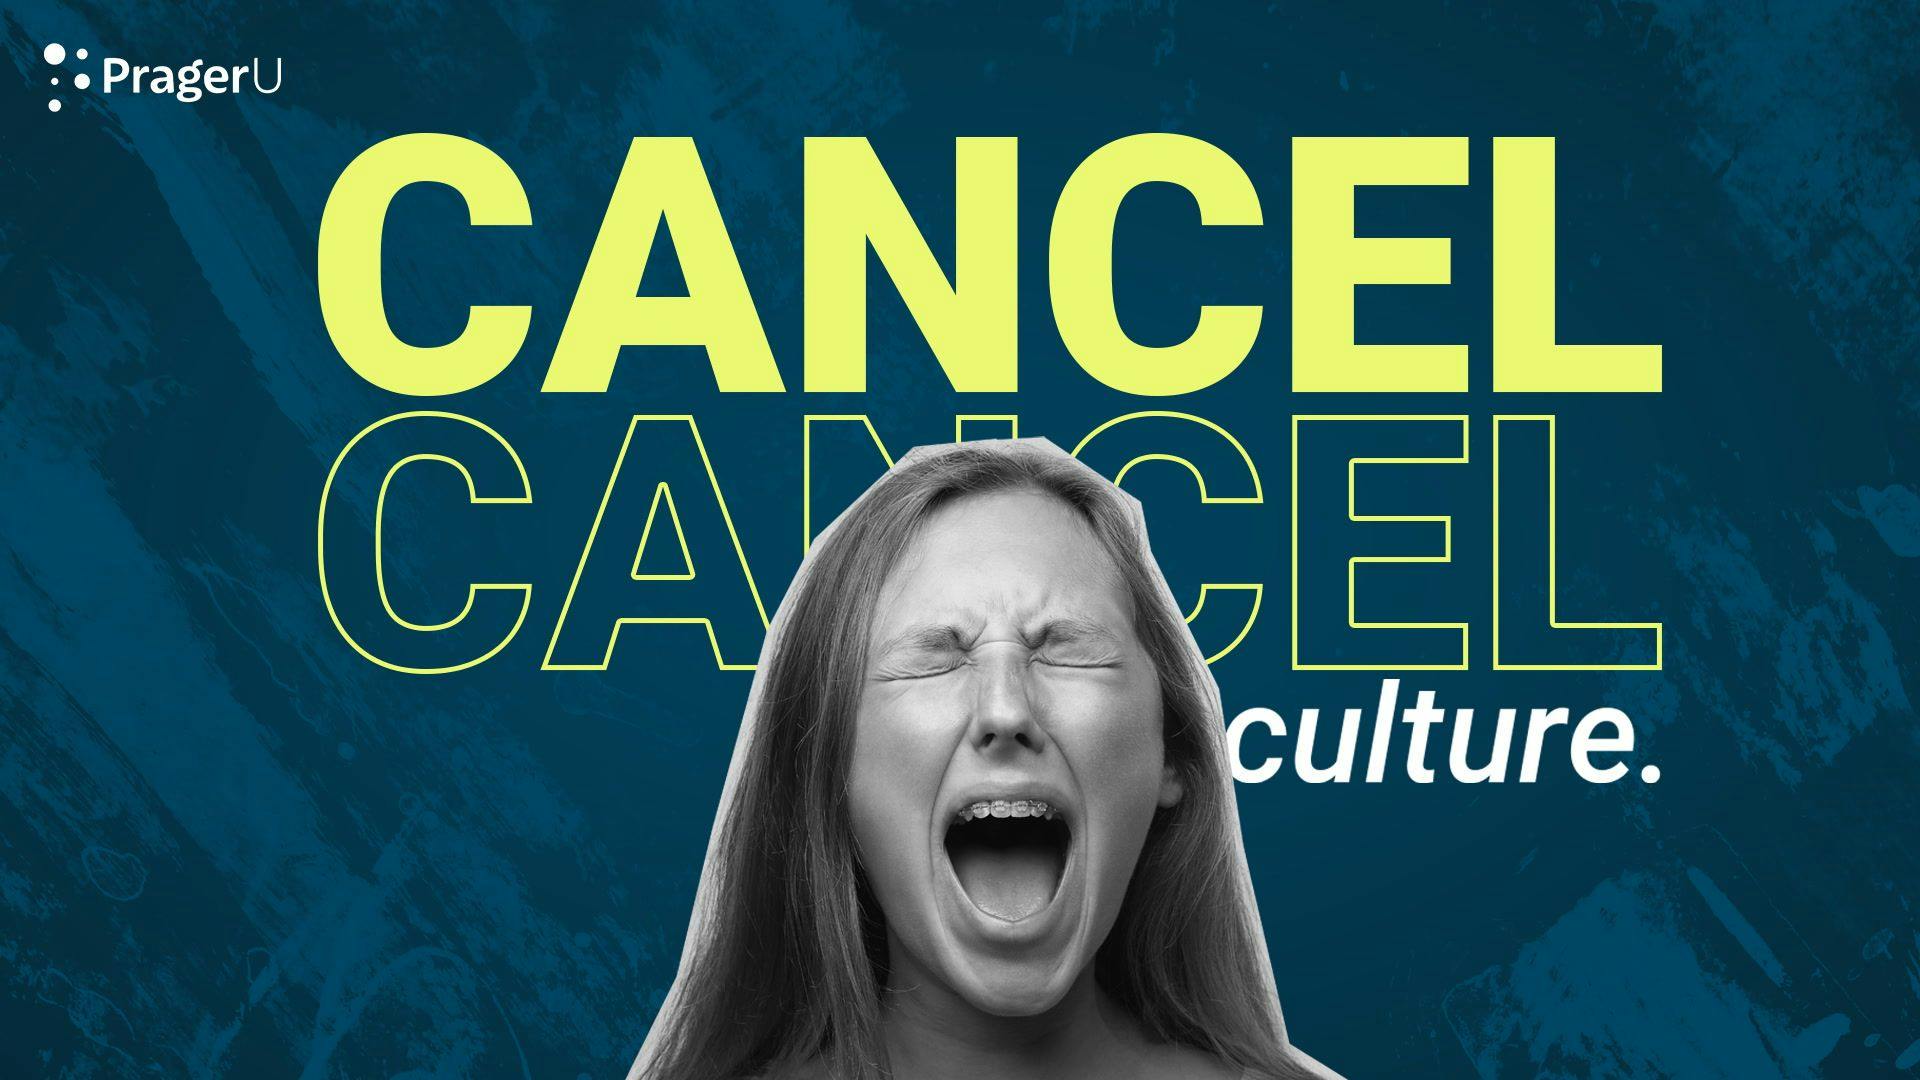 Cancel "Cancel Culture"